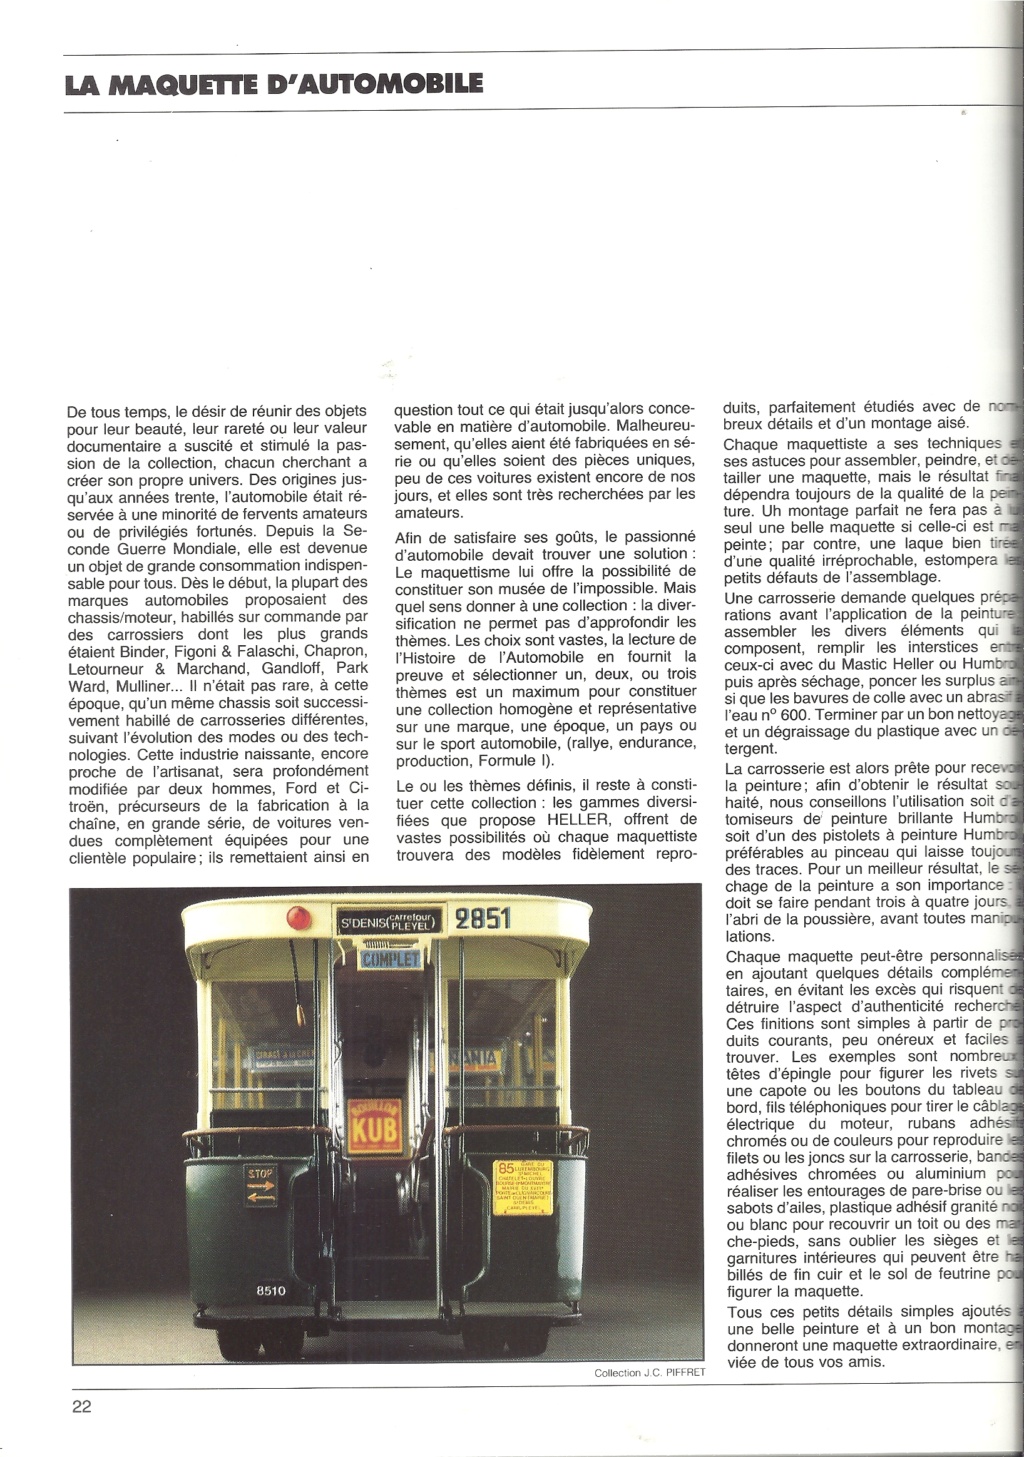 [1985] Pochette détaillant HELLER HUMBROL avec catalogues et tarif revendeur 1985  Hell3975